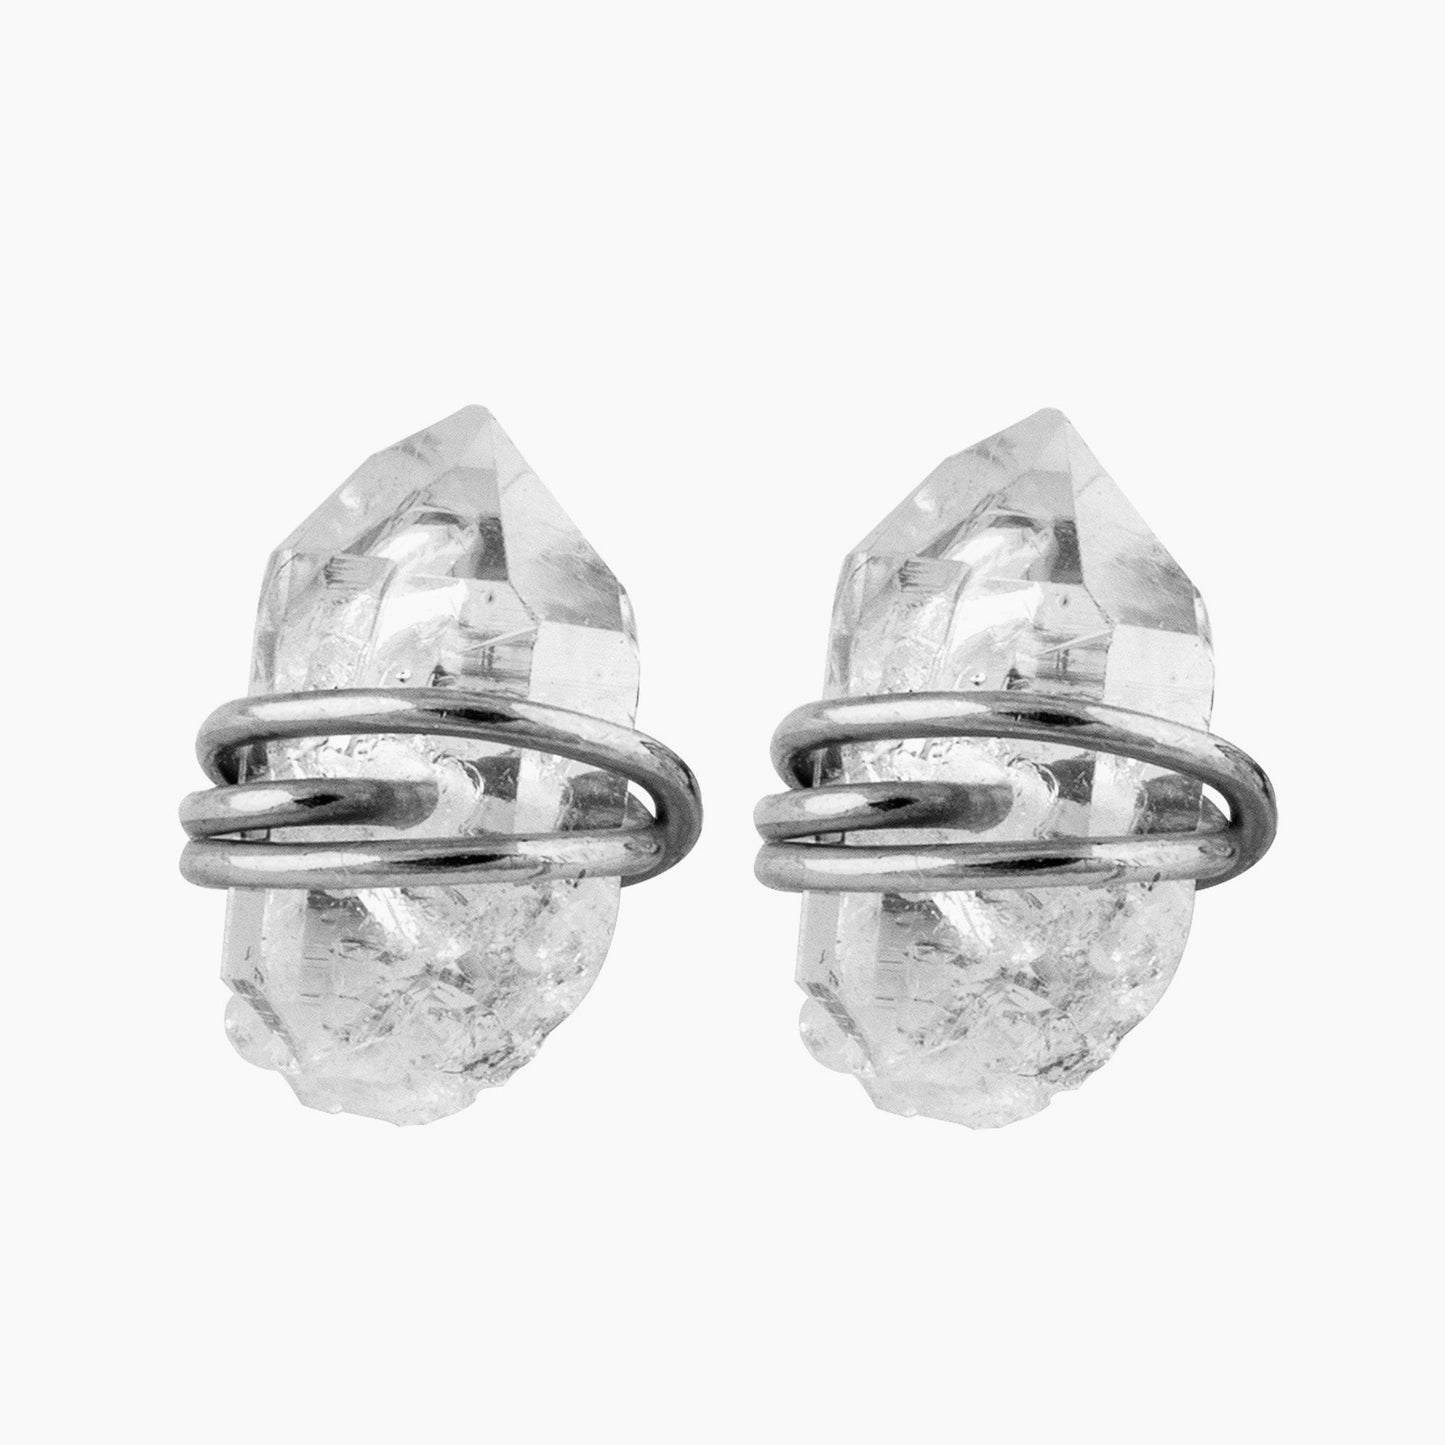 Solid 925 Sterling Silver Herkimer Diamond Stud Earrings,Handmade Silver Stud,  Earring / Girl /Women. Gift for her/  Anniversary / Birthday